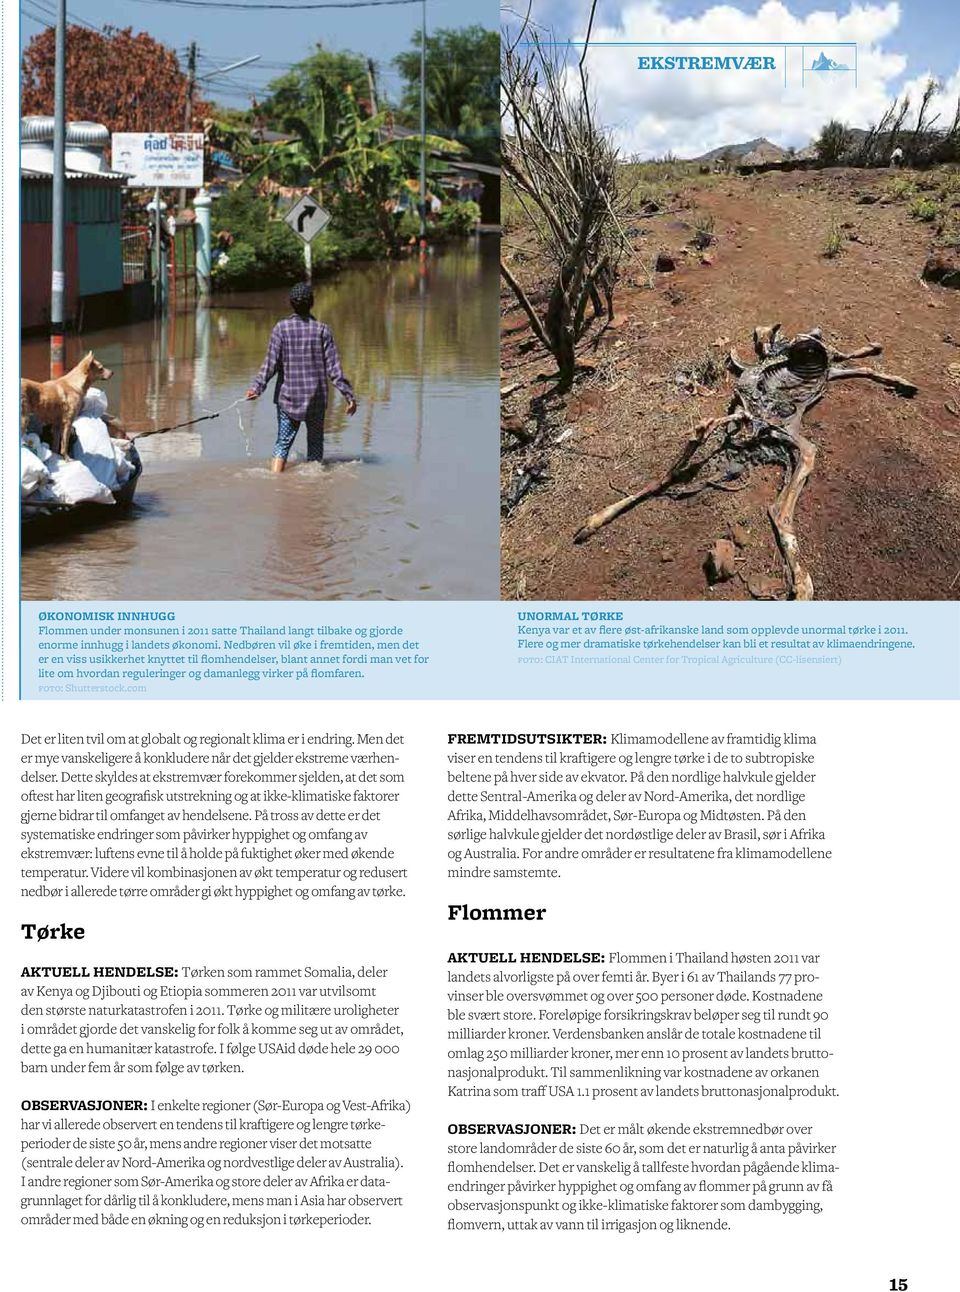 com UNORMAL TØRKE Kenya var et av flere øst-afrikanske land som opplevde unormal tørke i 2011. Flere og mer dramatiske tørkehendelser kan bli et resultat av klimaendringene.